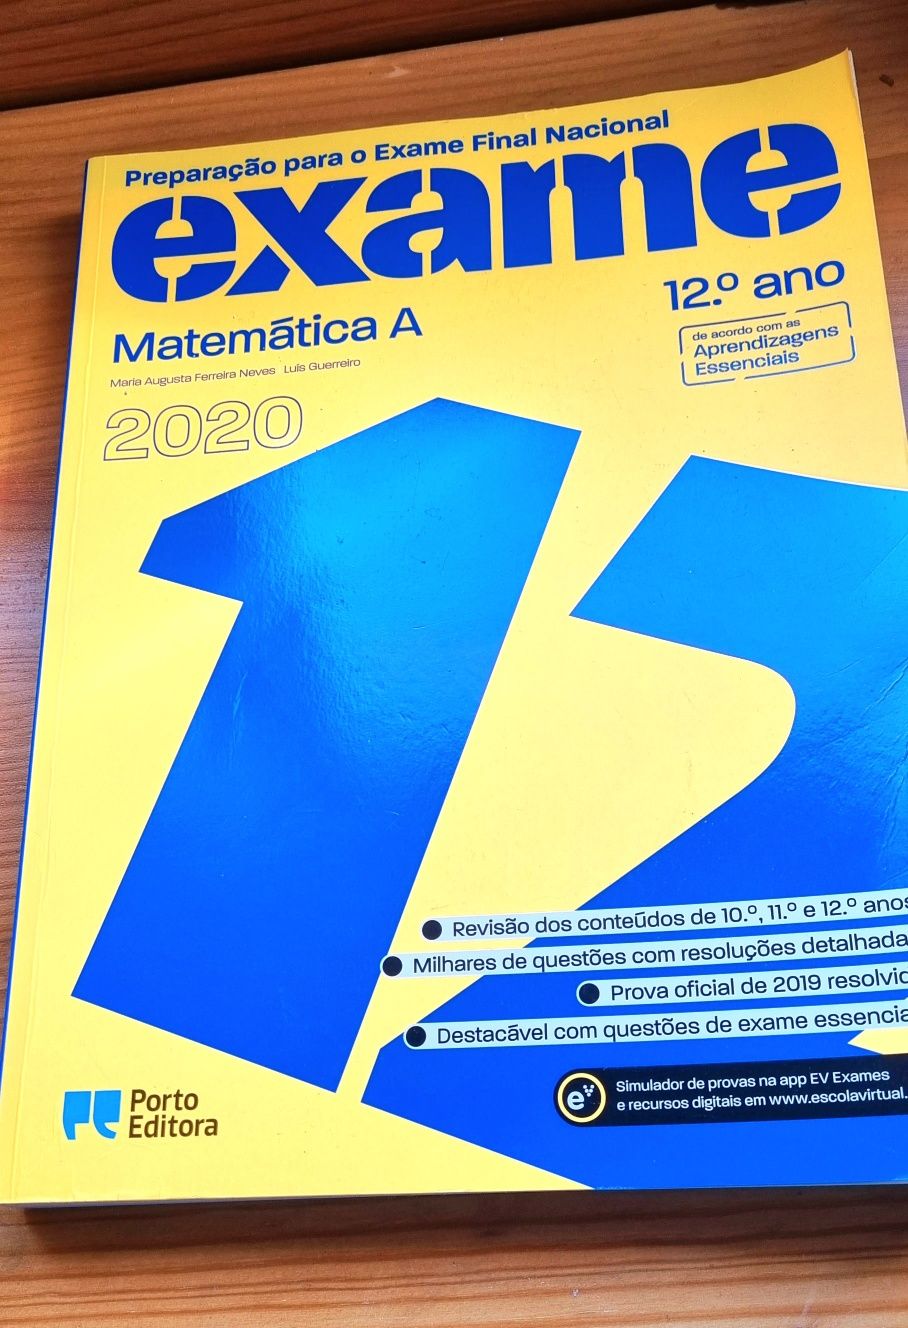 Livro preparação para o Exame Final Nacional Matemática A 12°